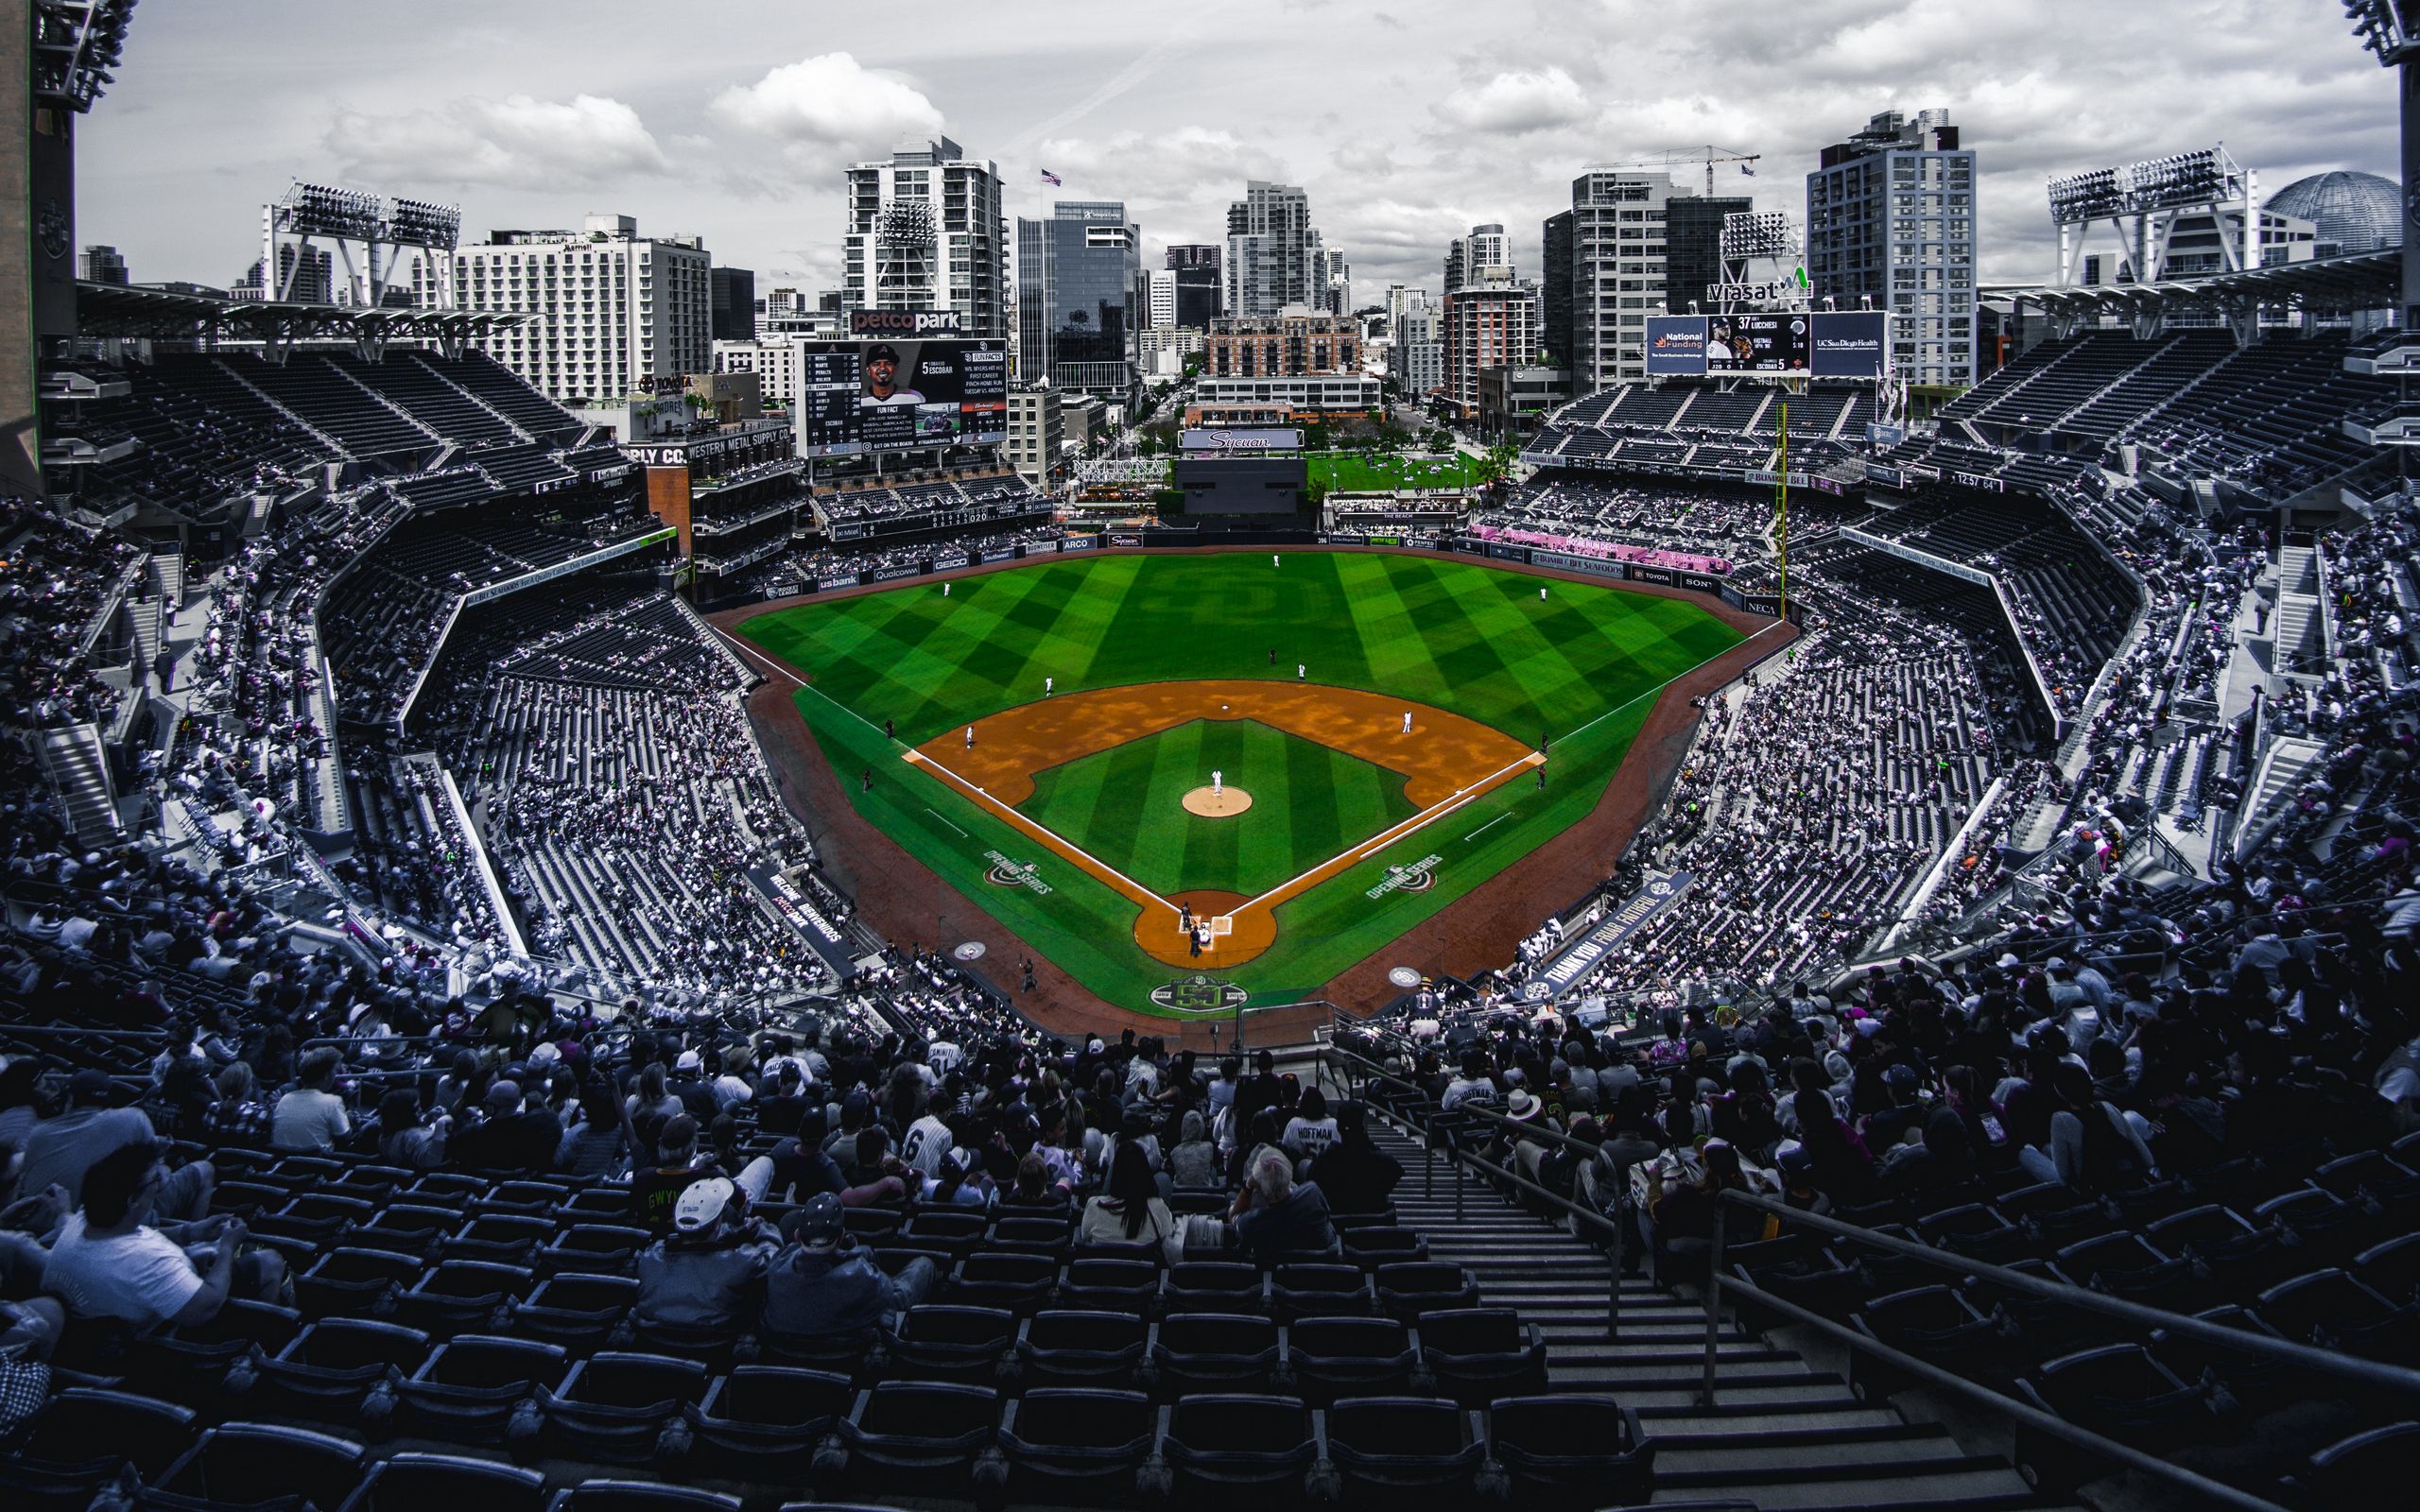 Download wallpaper 2560x1600 stadium, stands, baseball, match, field, arena  widescreen 16:10 hd background